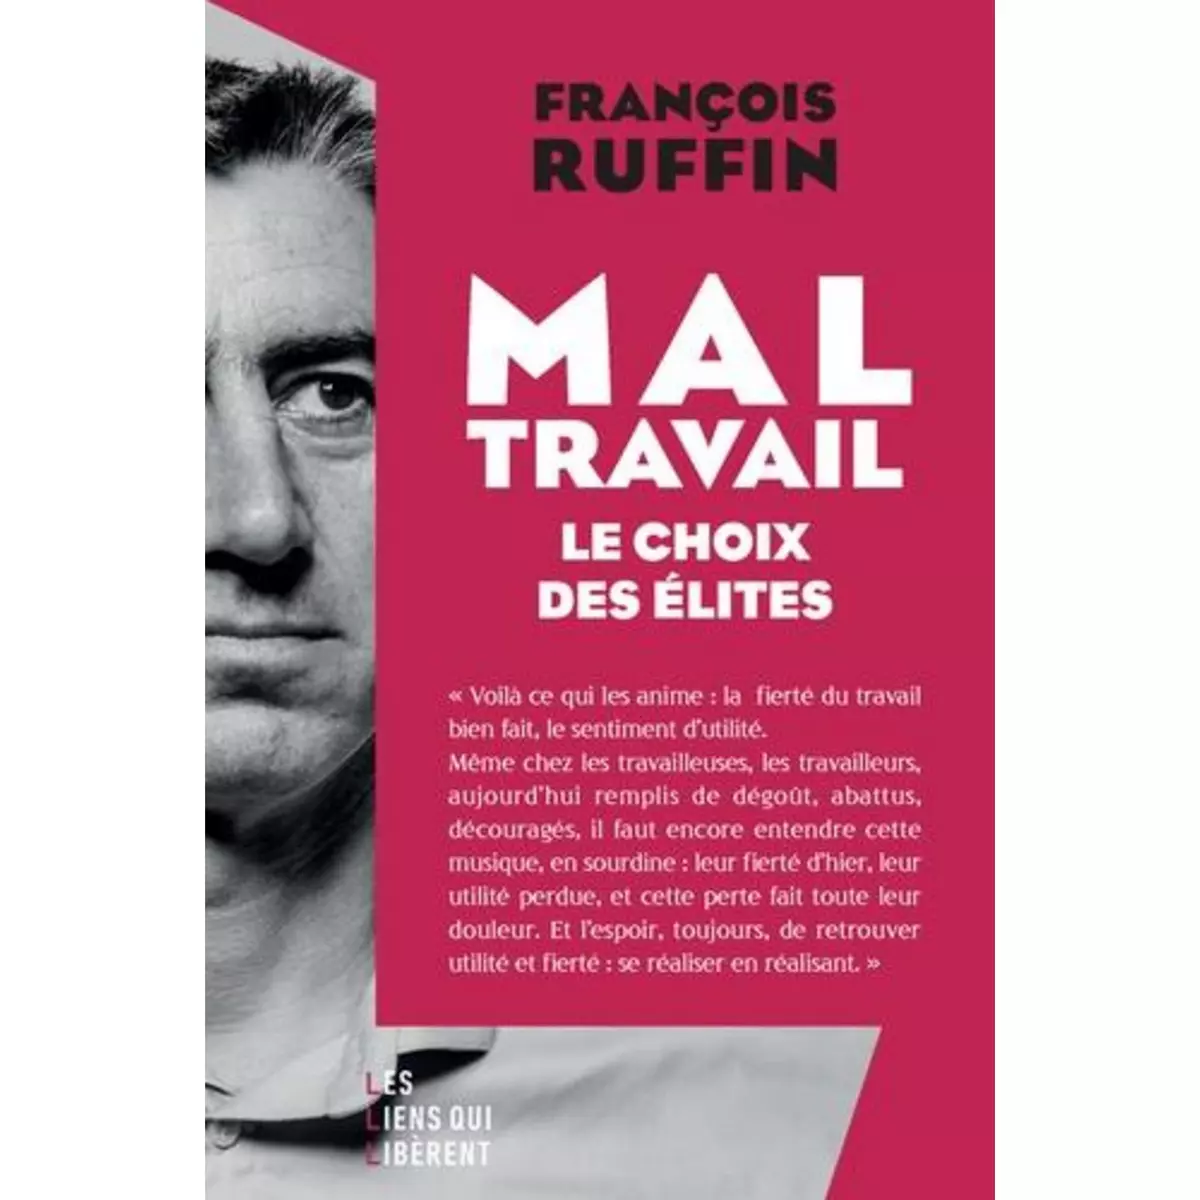  MAL-TRAVAIL. LE CHOIX DES ELITES, Ruffin François